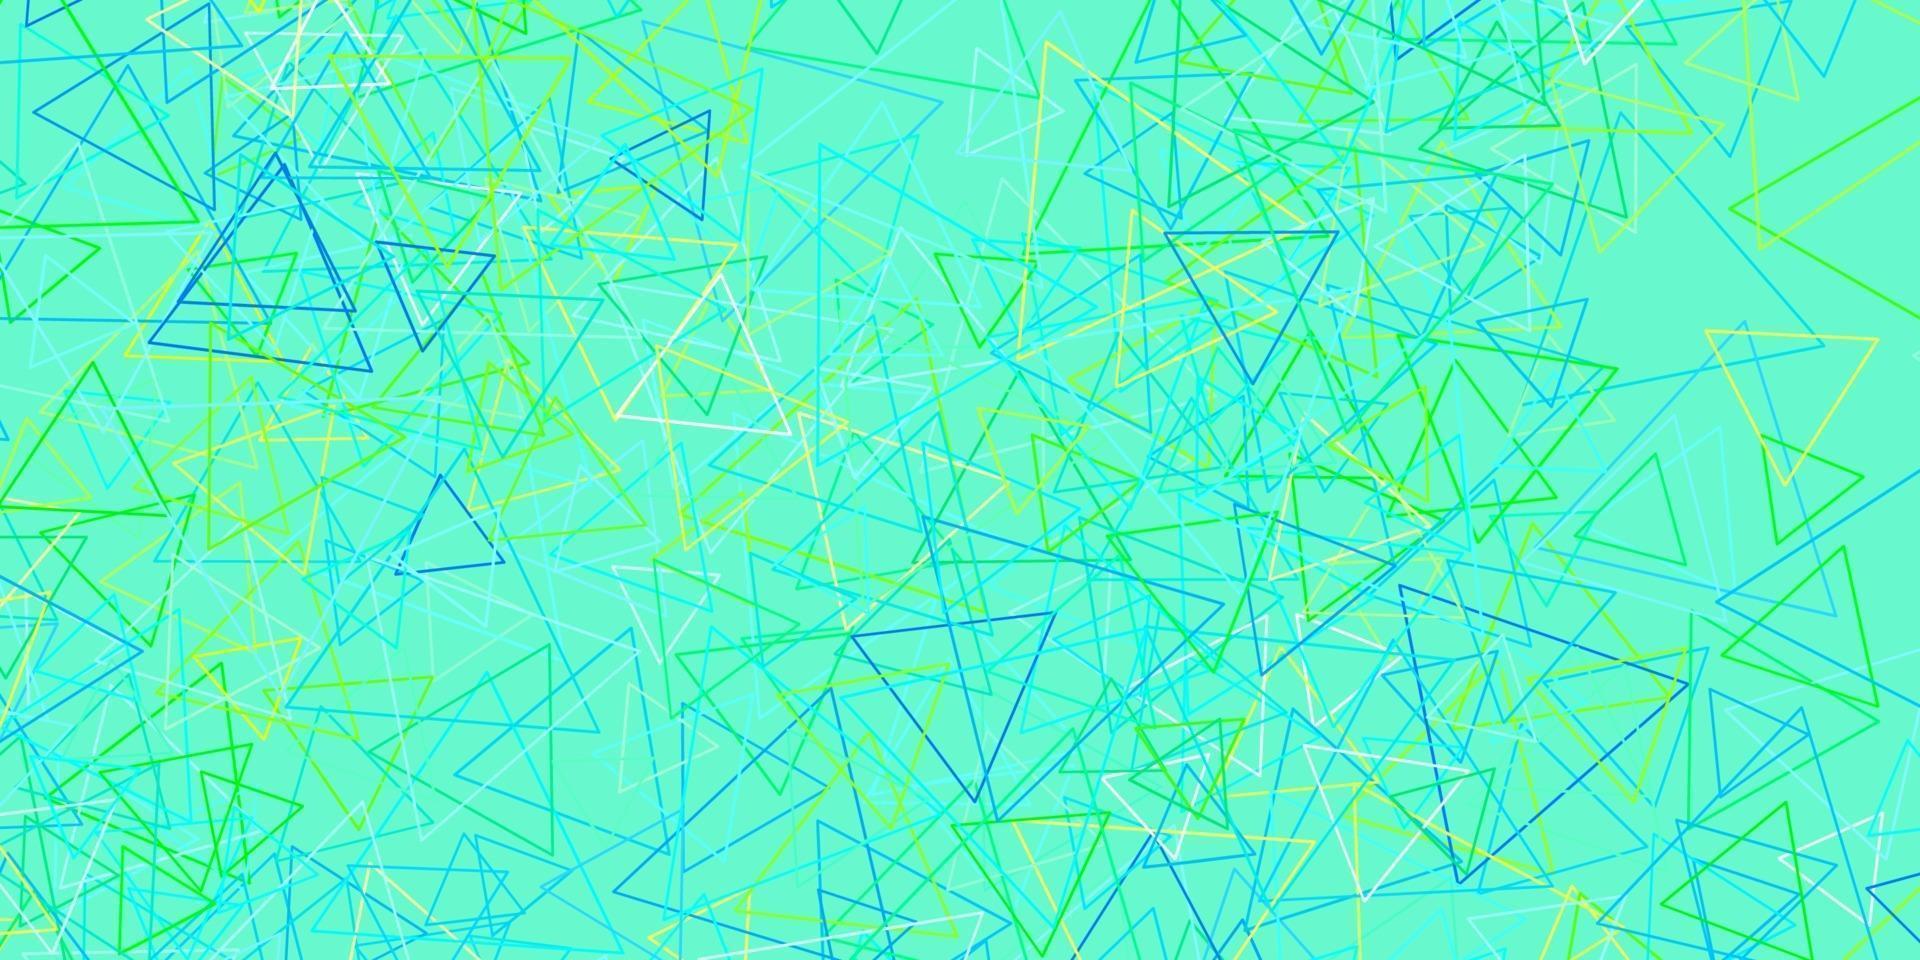 hellblaues, grünes Vektorlayout mit Dreiecksformen. vektor